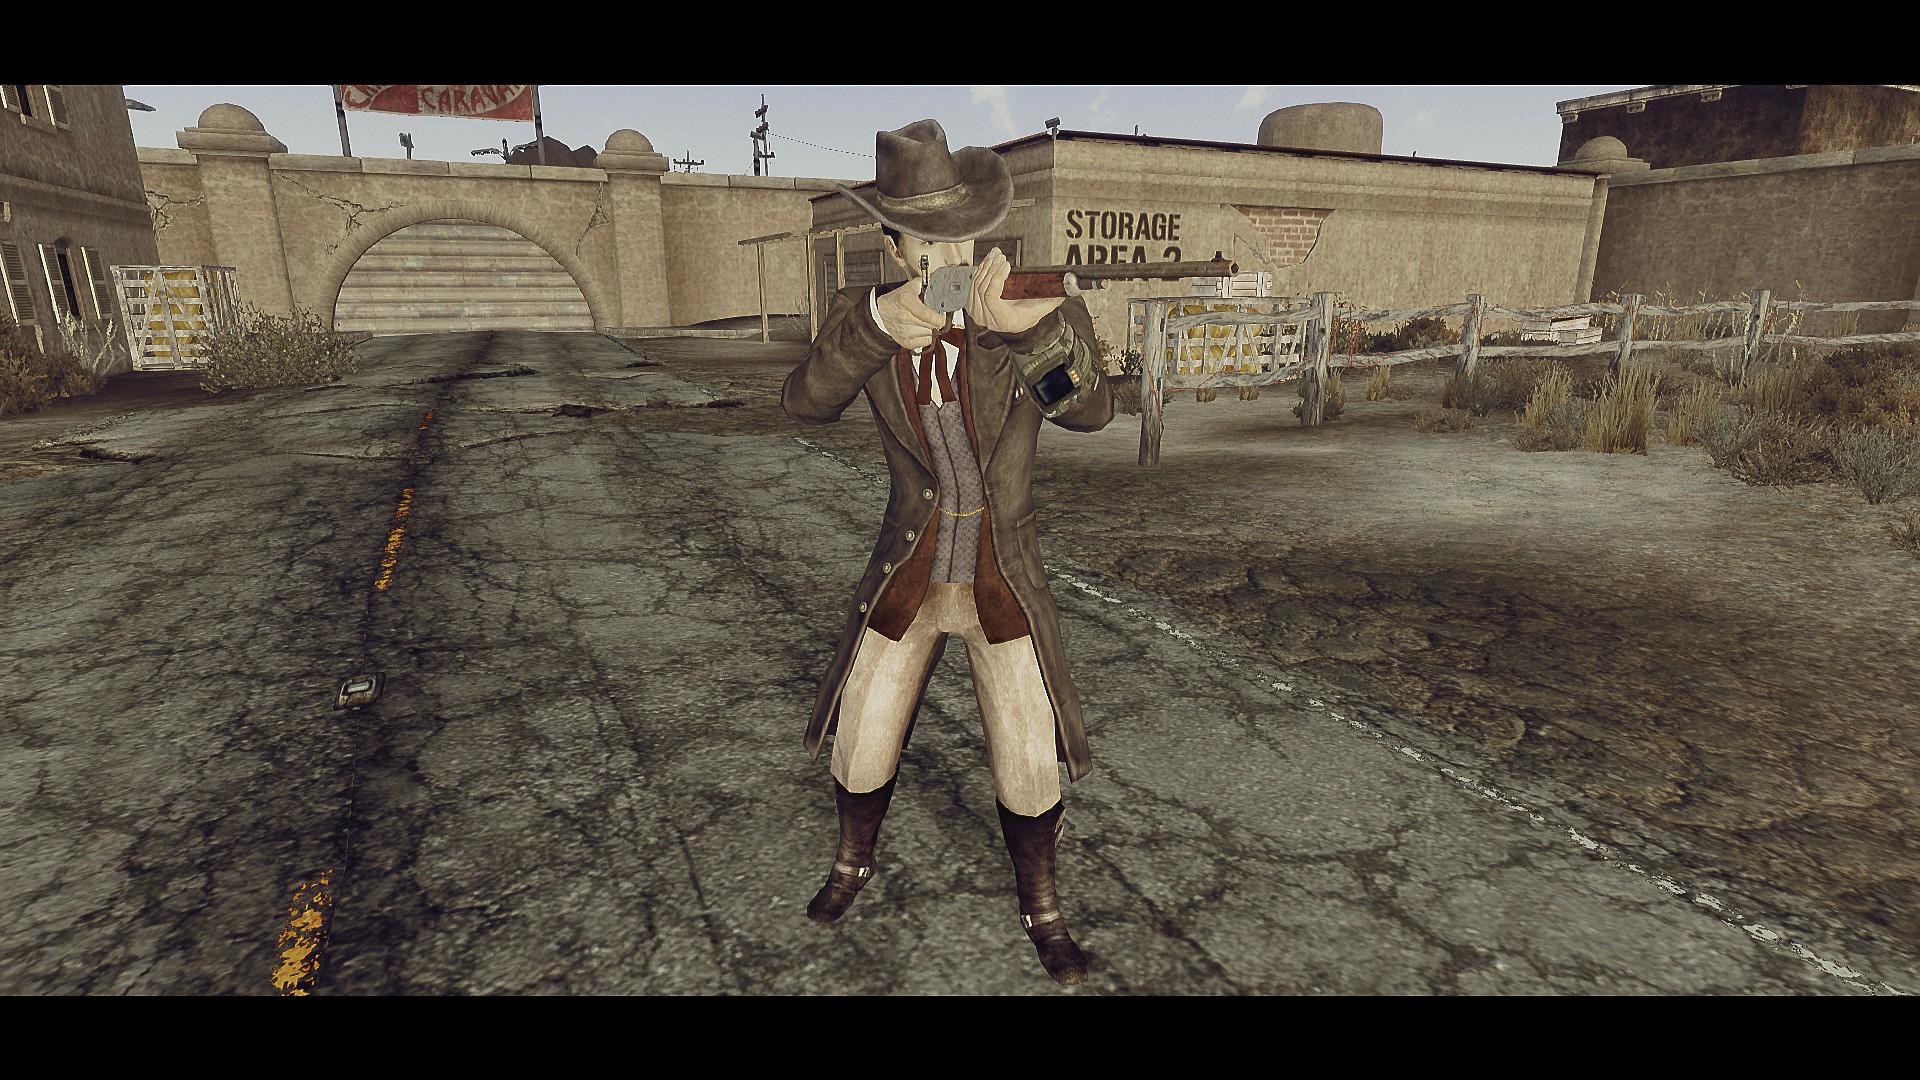 Fallout ковбой. Fallout New Vegas одежда ковбоев. Ранчо Вулфхорна Fallout New Vegas. Cowboy outfit Fallout New Vegas. Ковбойская одежда для фоллаут Нью Вегас.